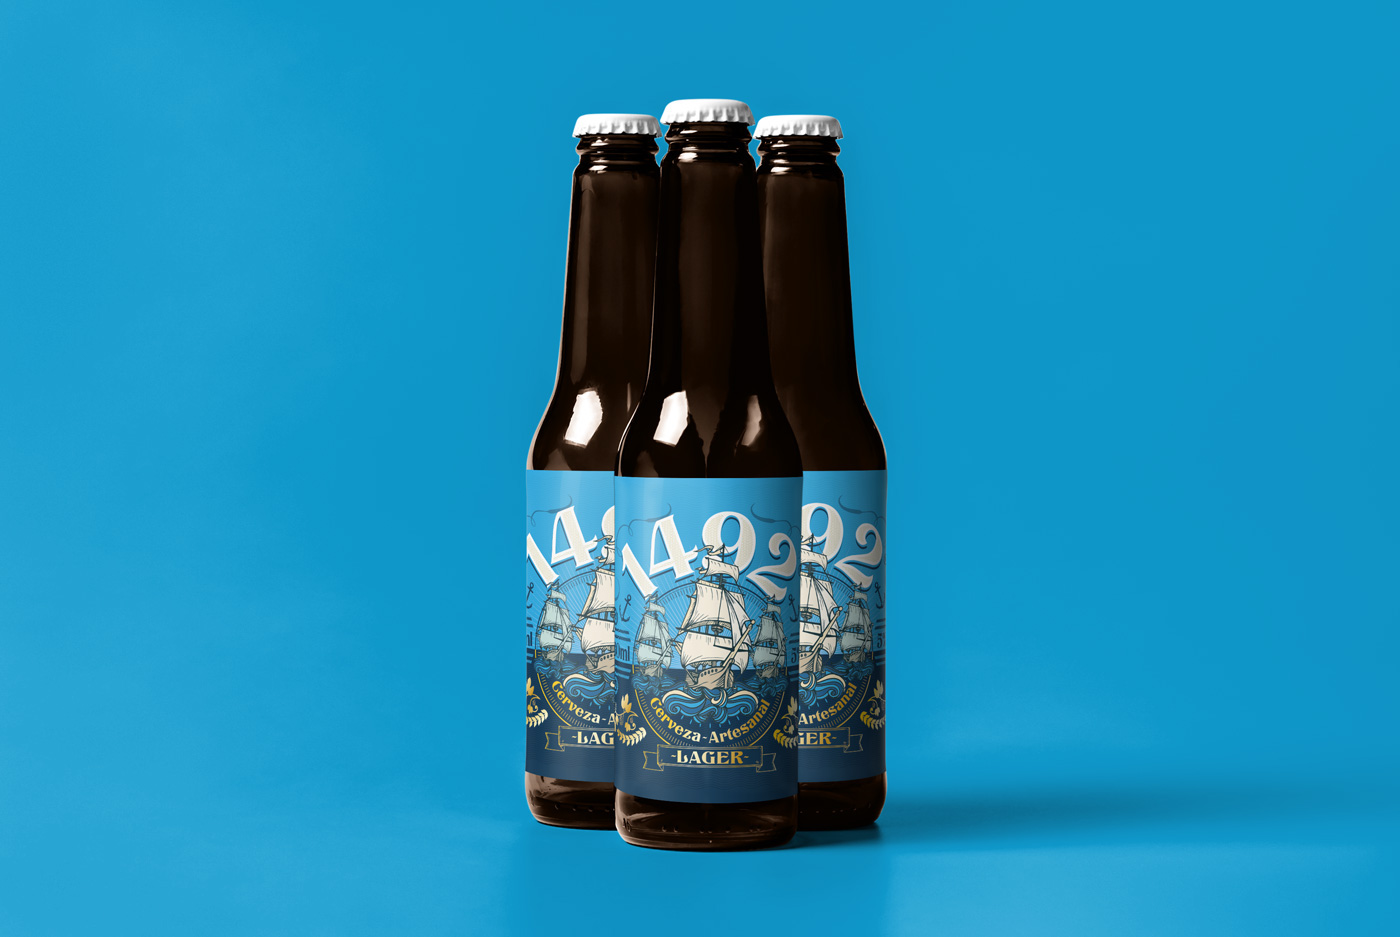 Label craft beer america Sailor sea ship Ecuador telmo cuenca